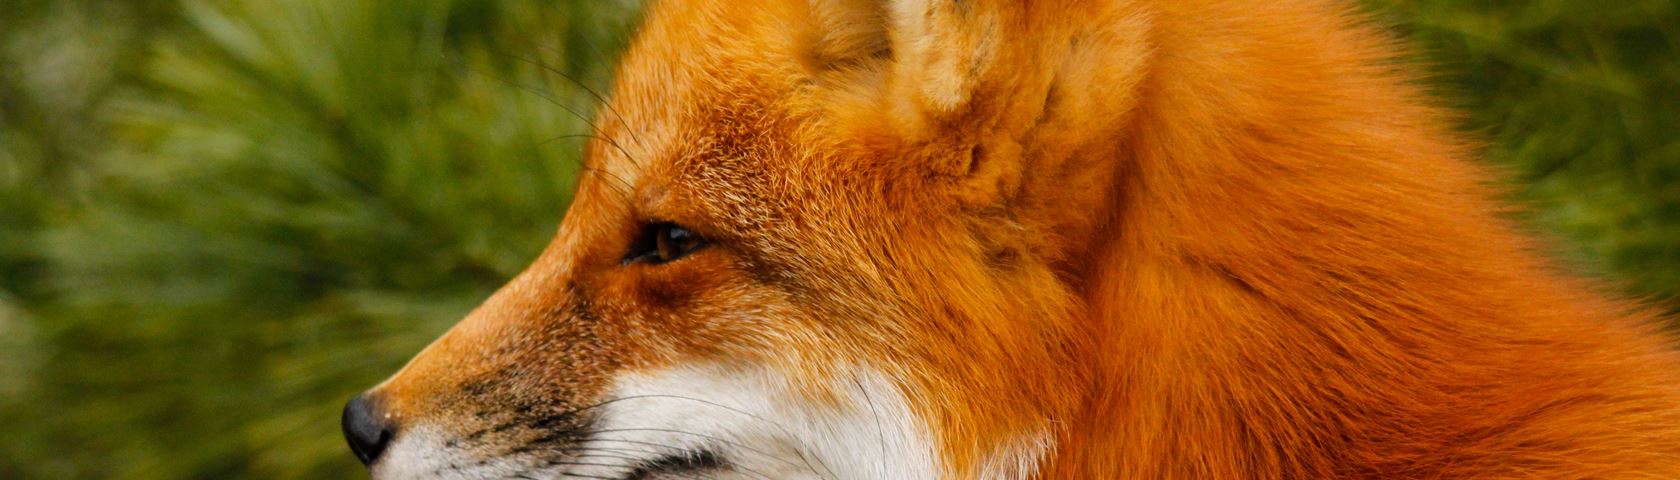 Foxy Looking Profile - Red Fox - HD Wallpaper 